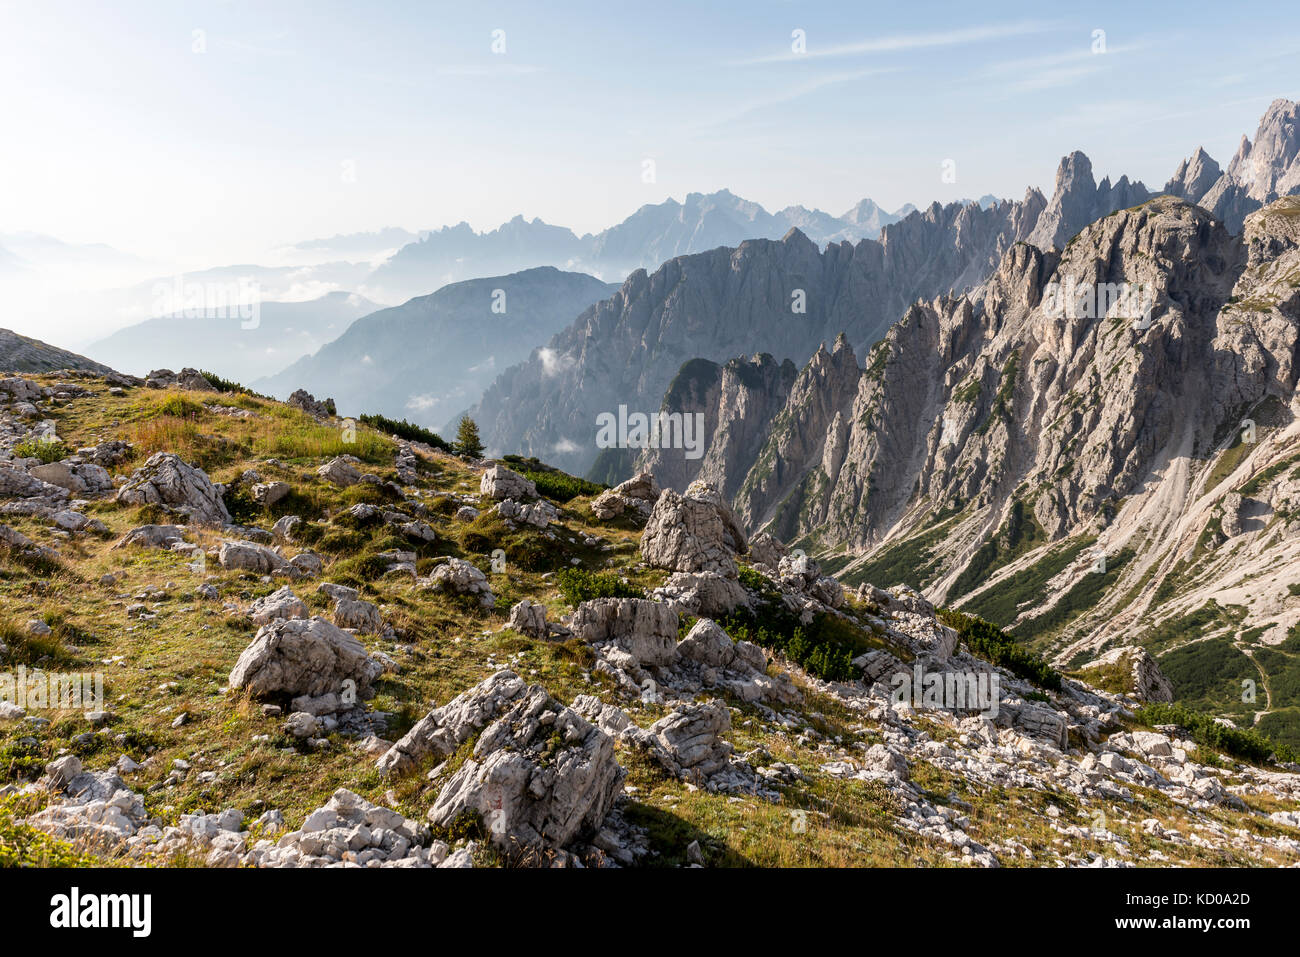 Vista nella valle dal sentiero escursionistico per le Tre Cime di Lavaredo, Dolomiti di Sesto, alto adige, trentino-alto adige, alto-adige Foto Stock